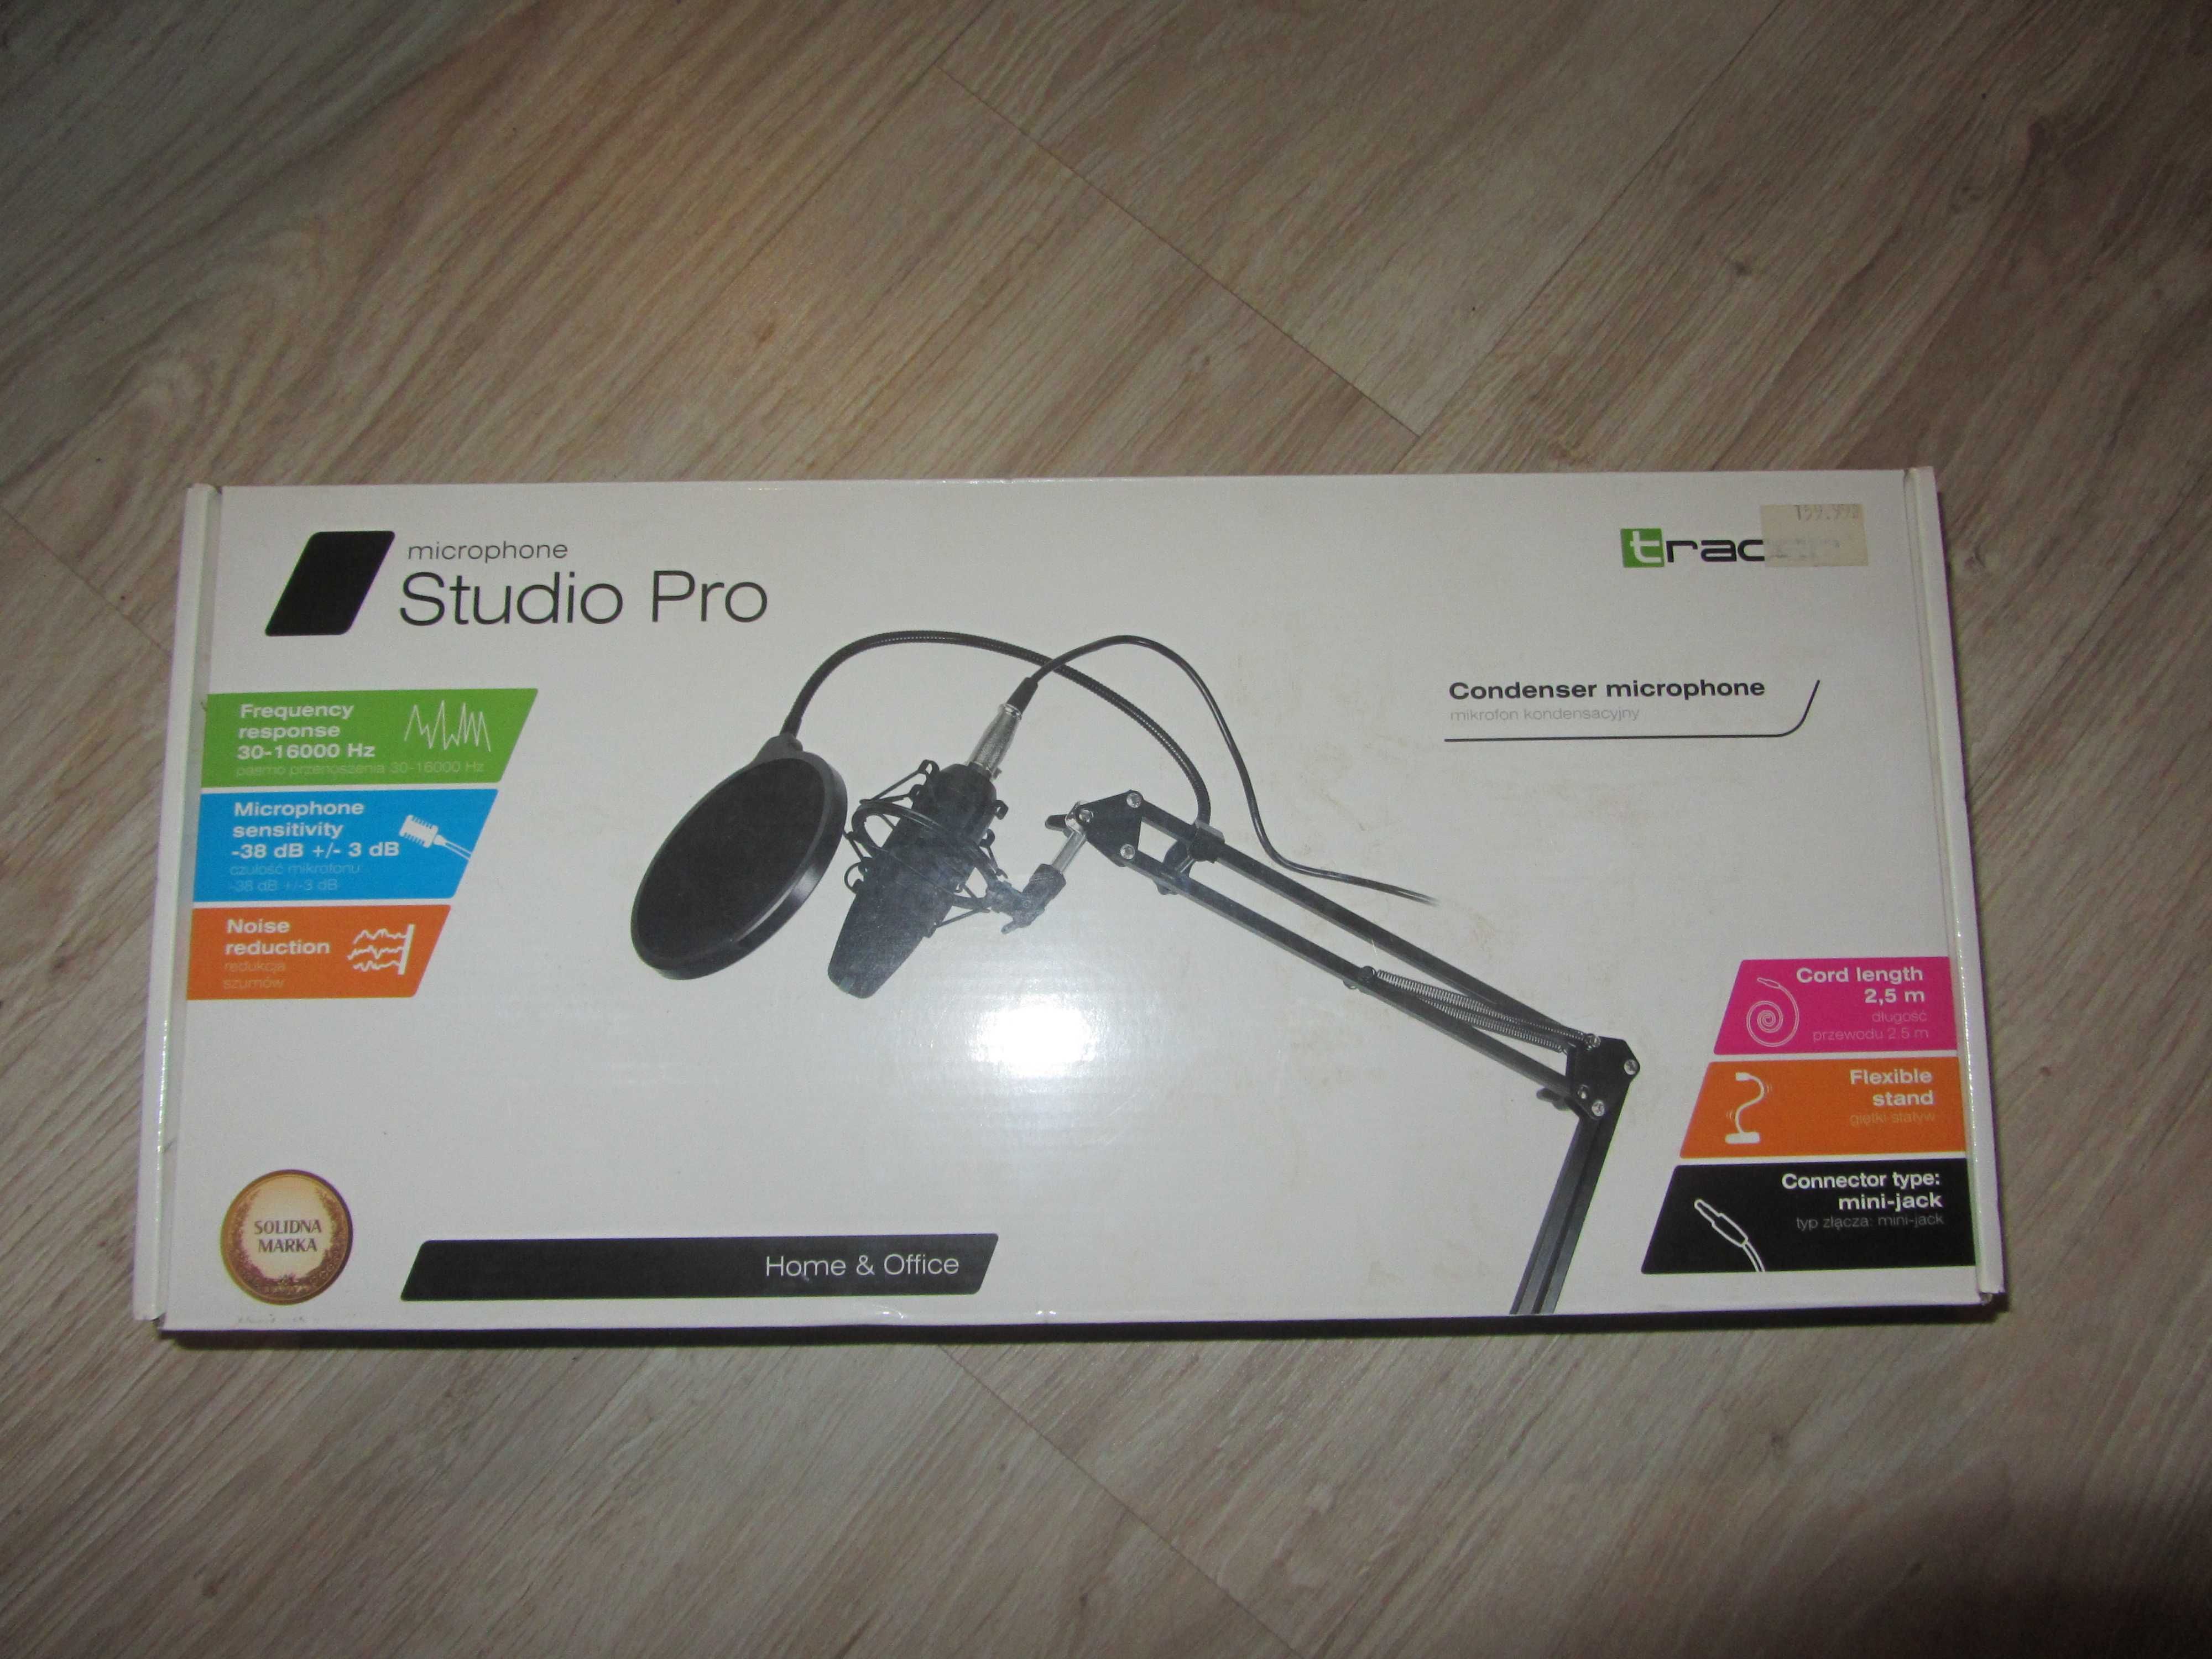 Microphone Studio Pro